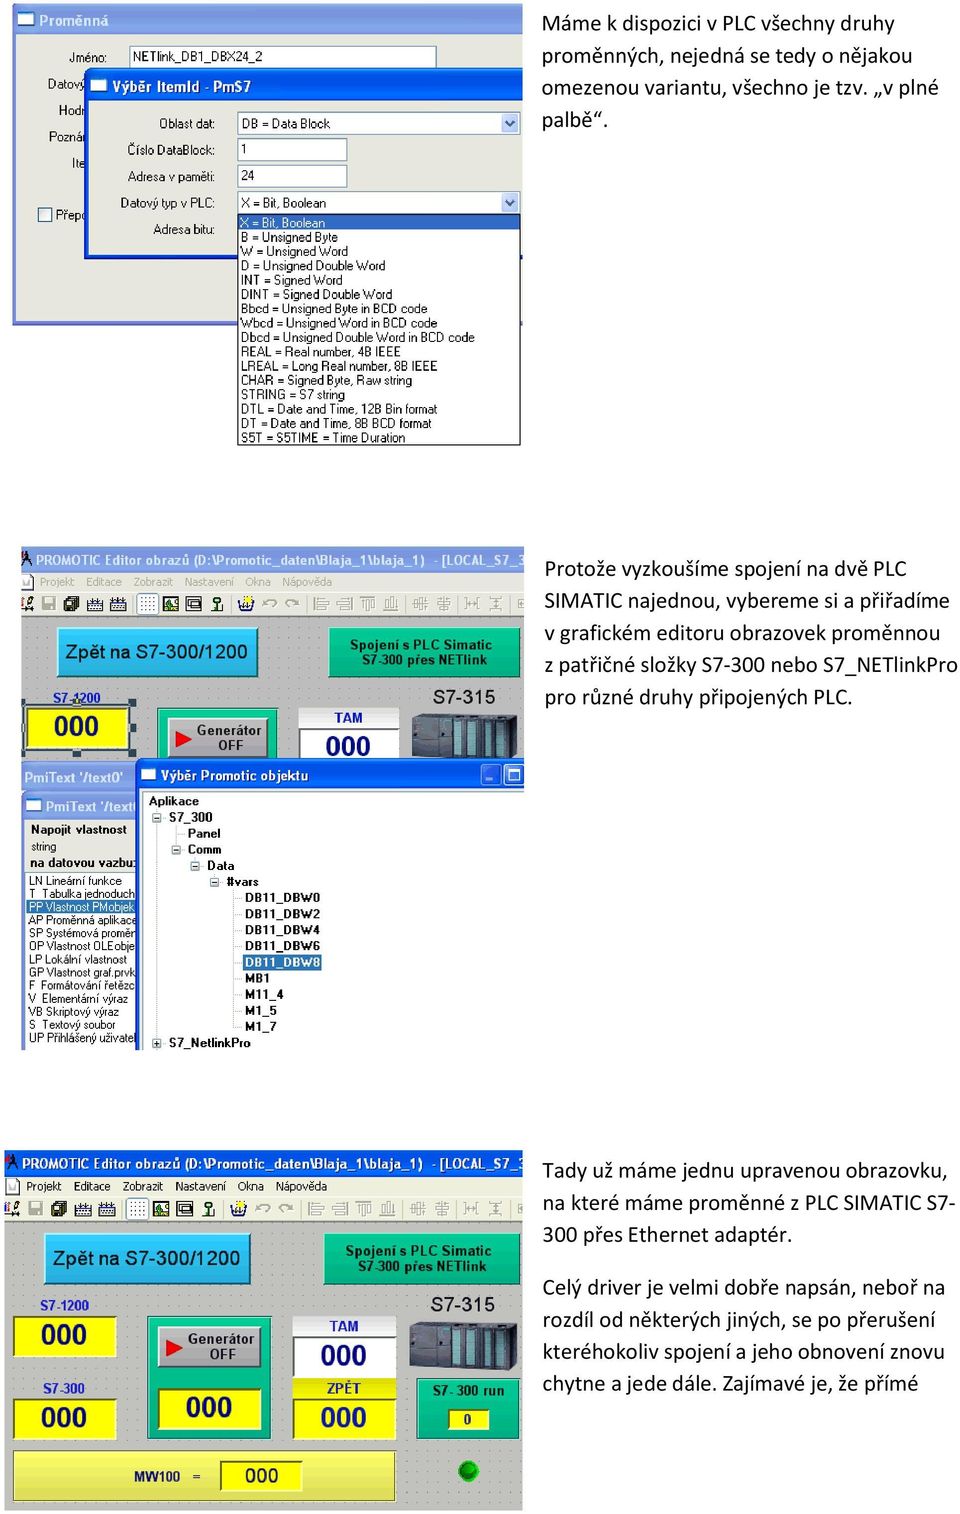 S7_NETlinkPro pro různé druhy připojených PLC.